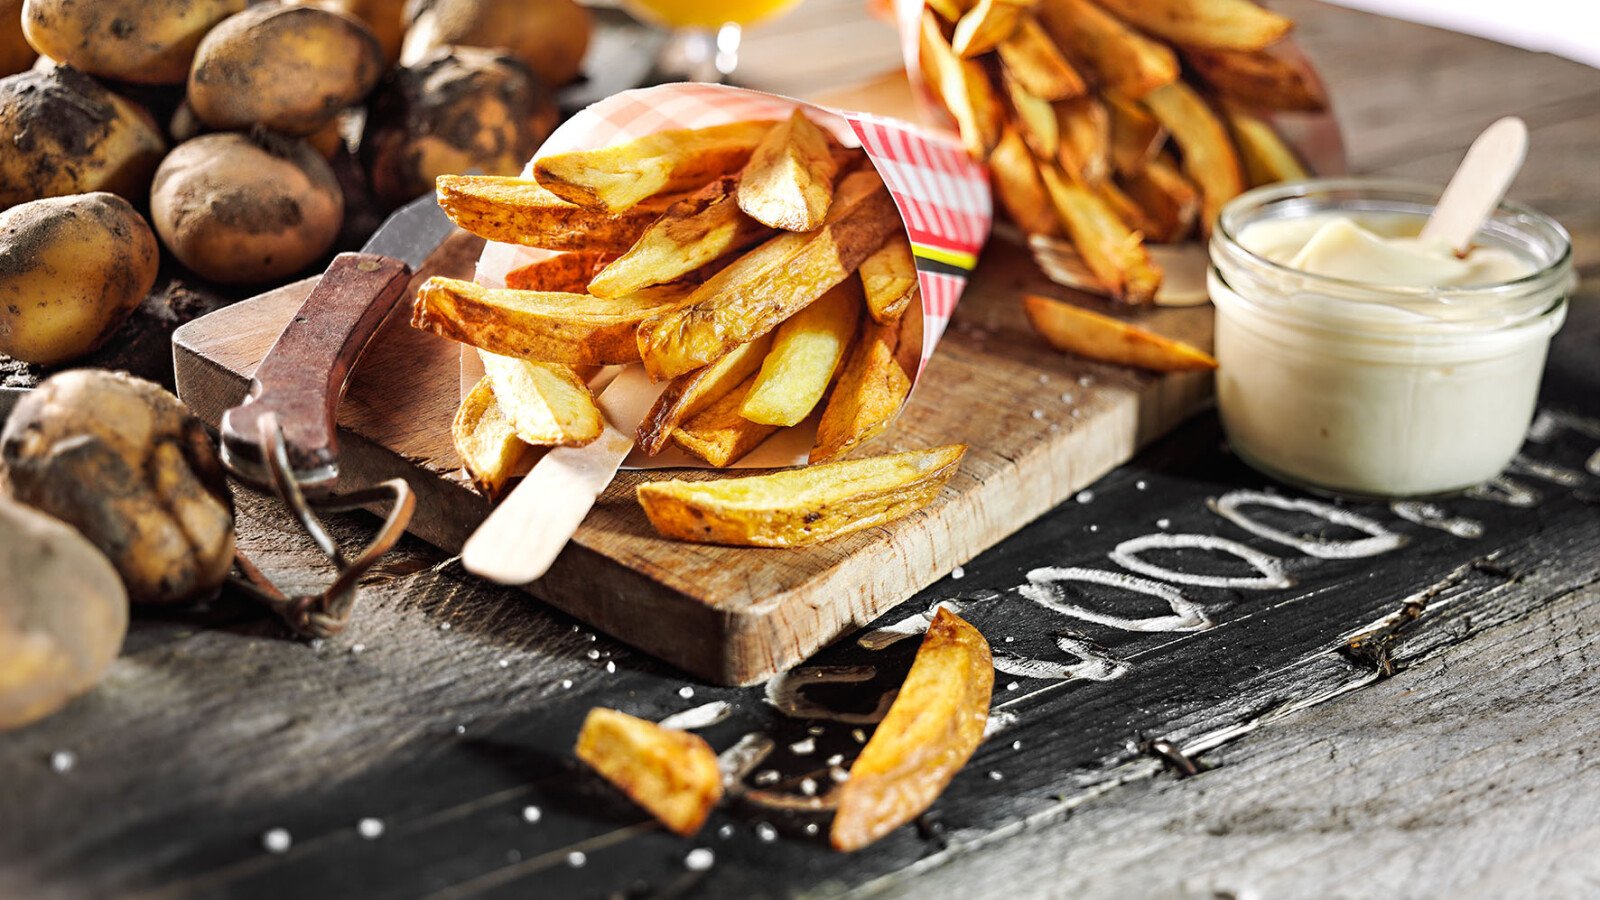 DeVlaendere is het merk voor echte Belgische sauzen. De mayonaise is heerlijk bij verse friet.